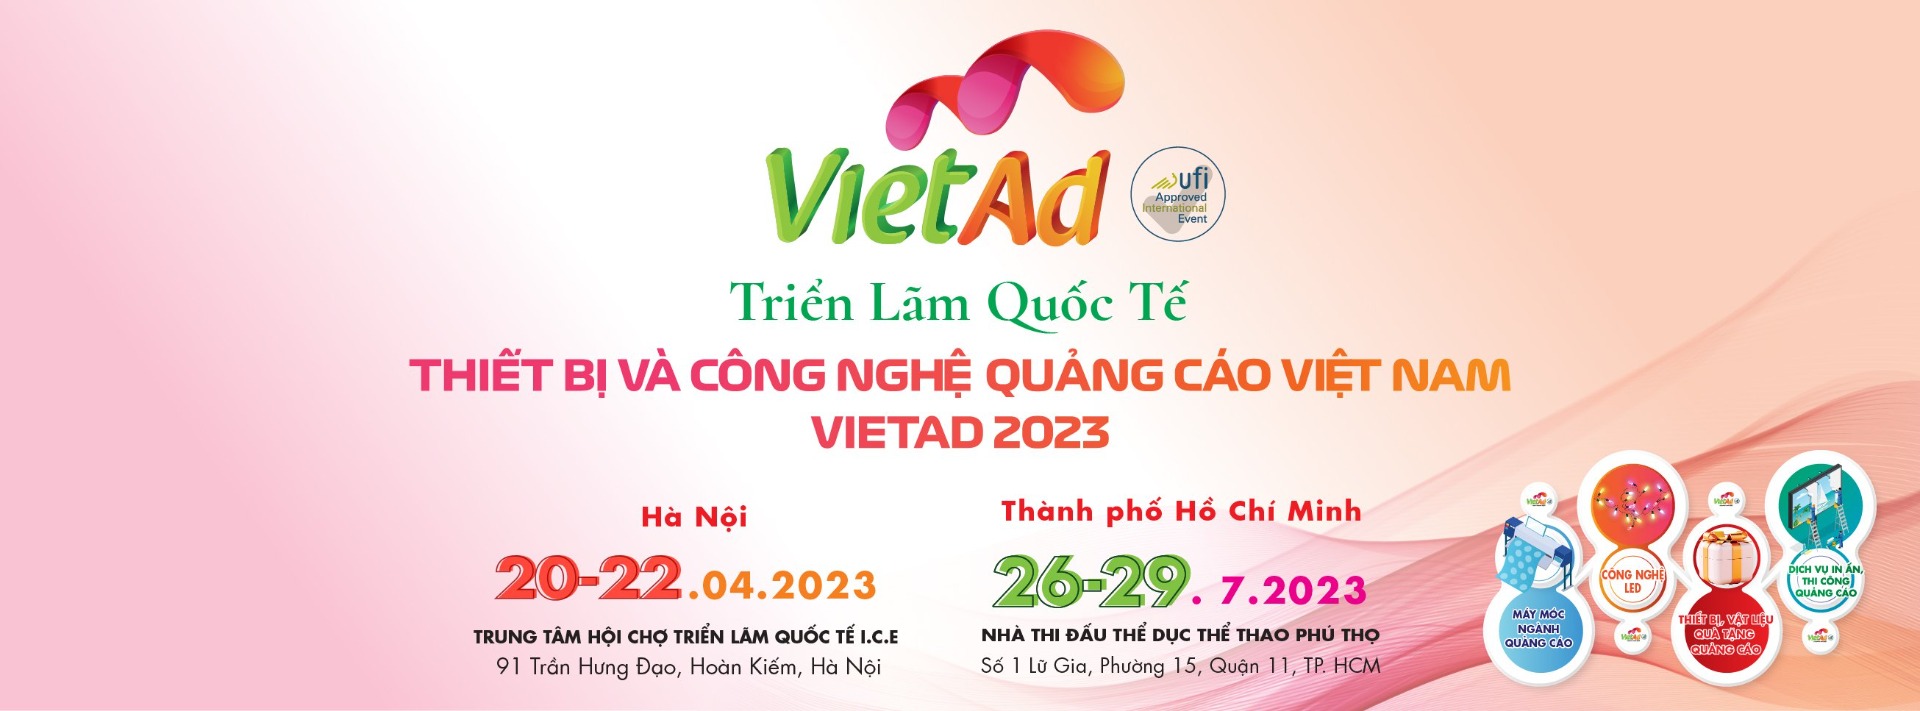 VIETAD HCM 2023 – Triển lãm Quốc tế Thiết bị và Công nghệ Quảng cáo tại TP. HCM